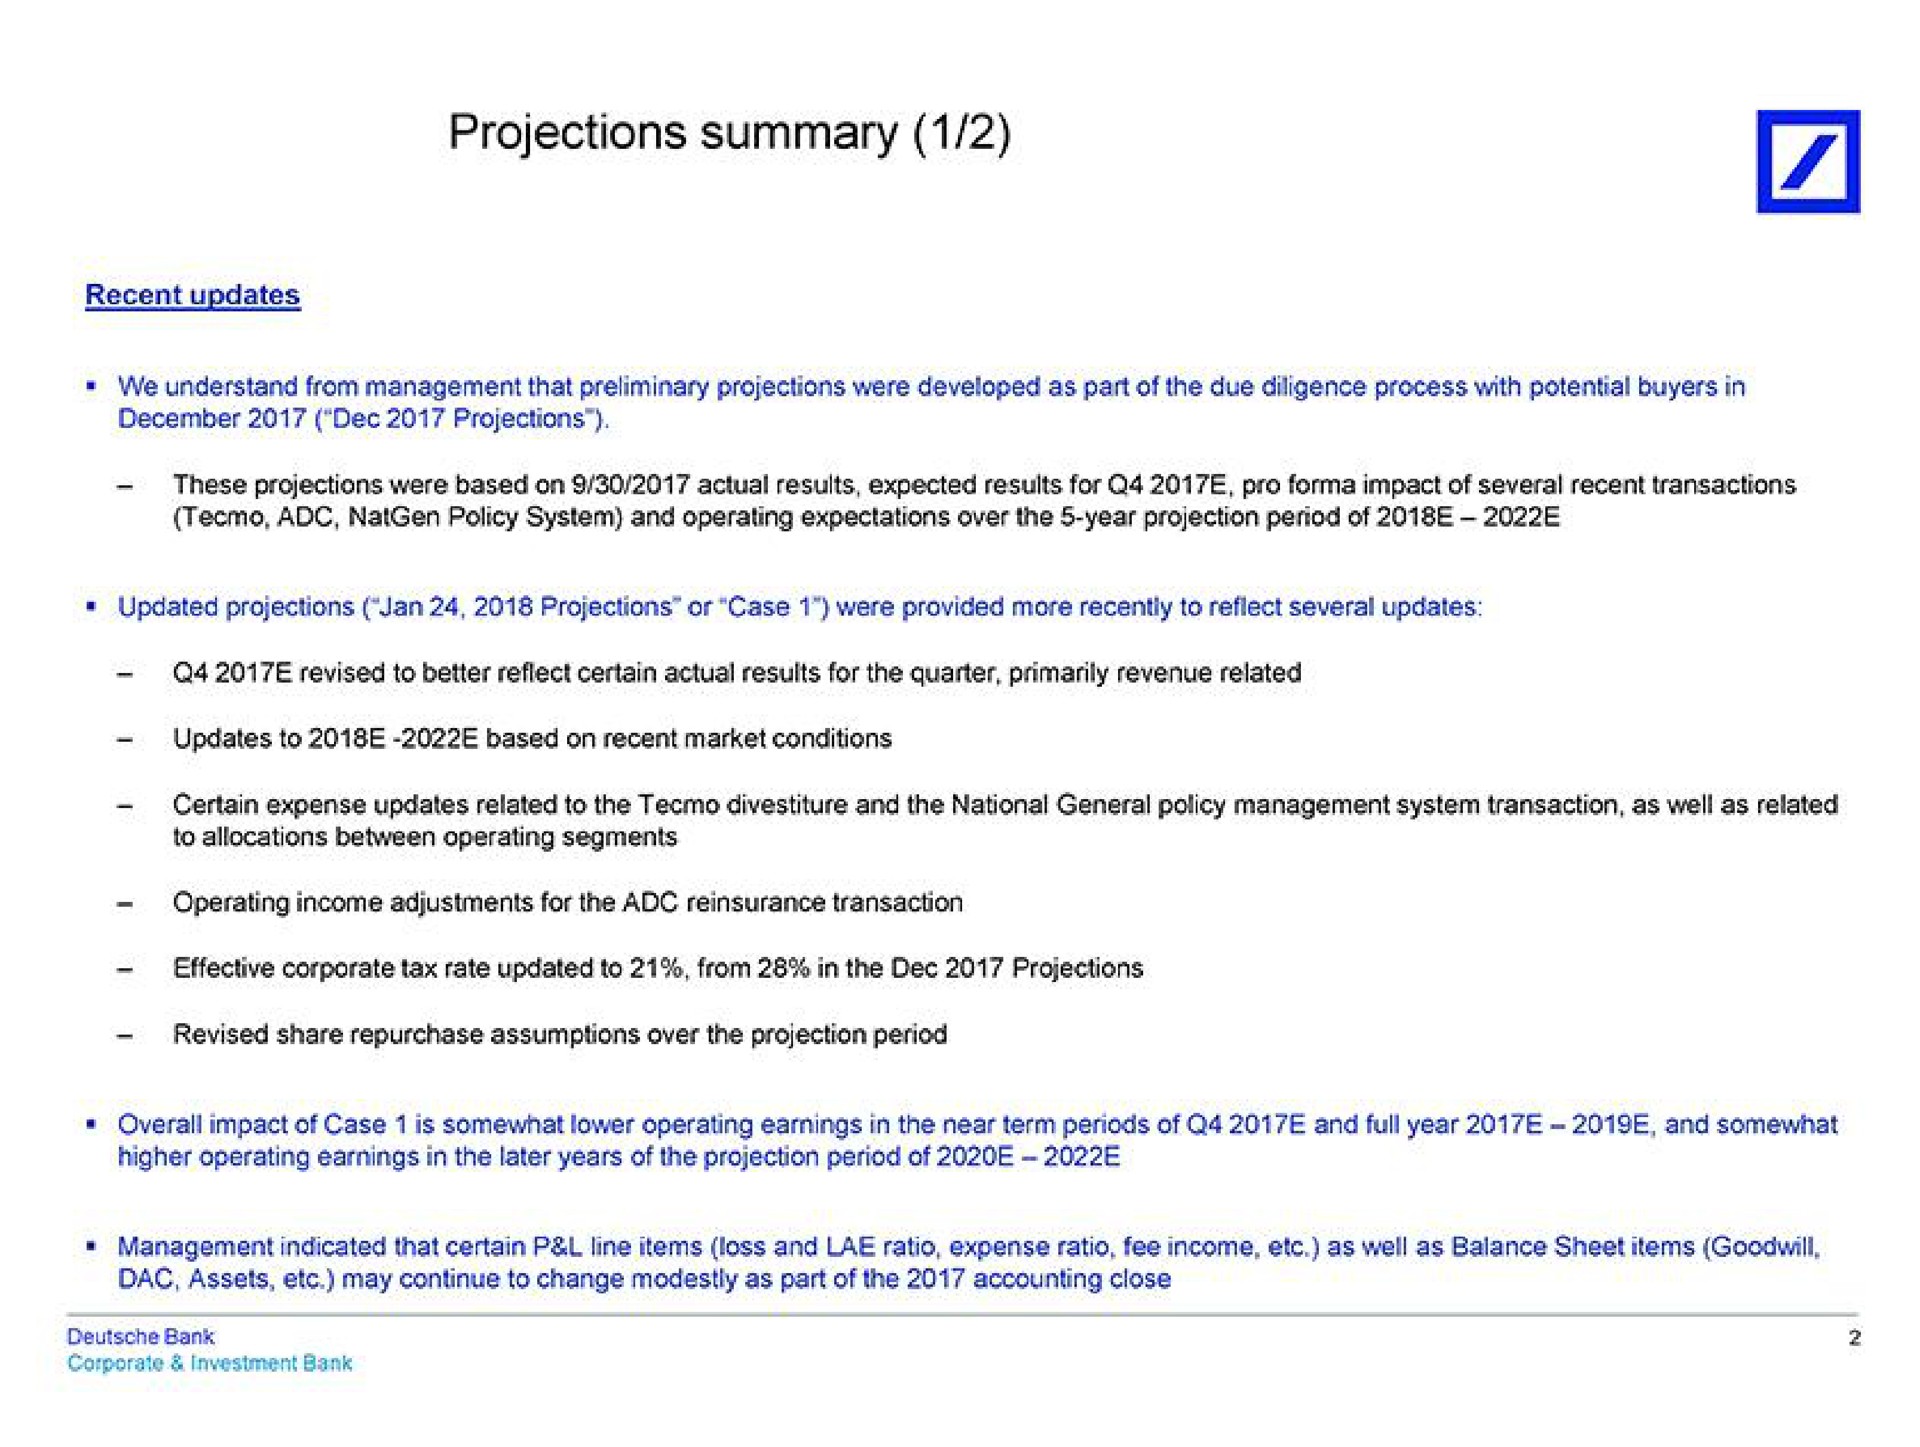 projections summary | Deutsche Bank